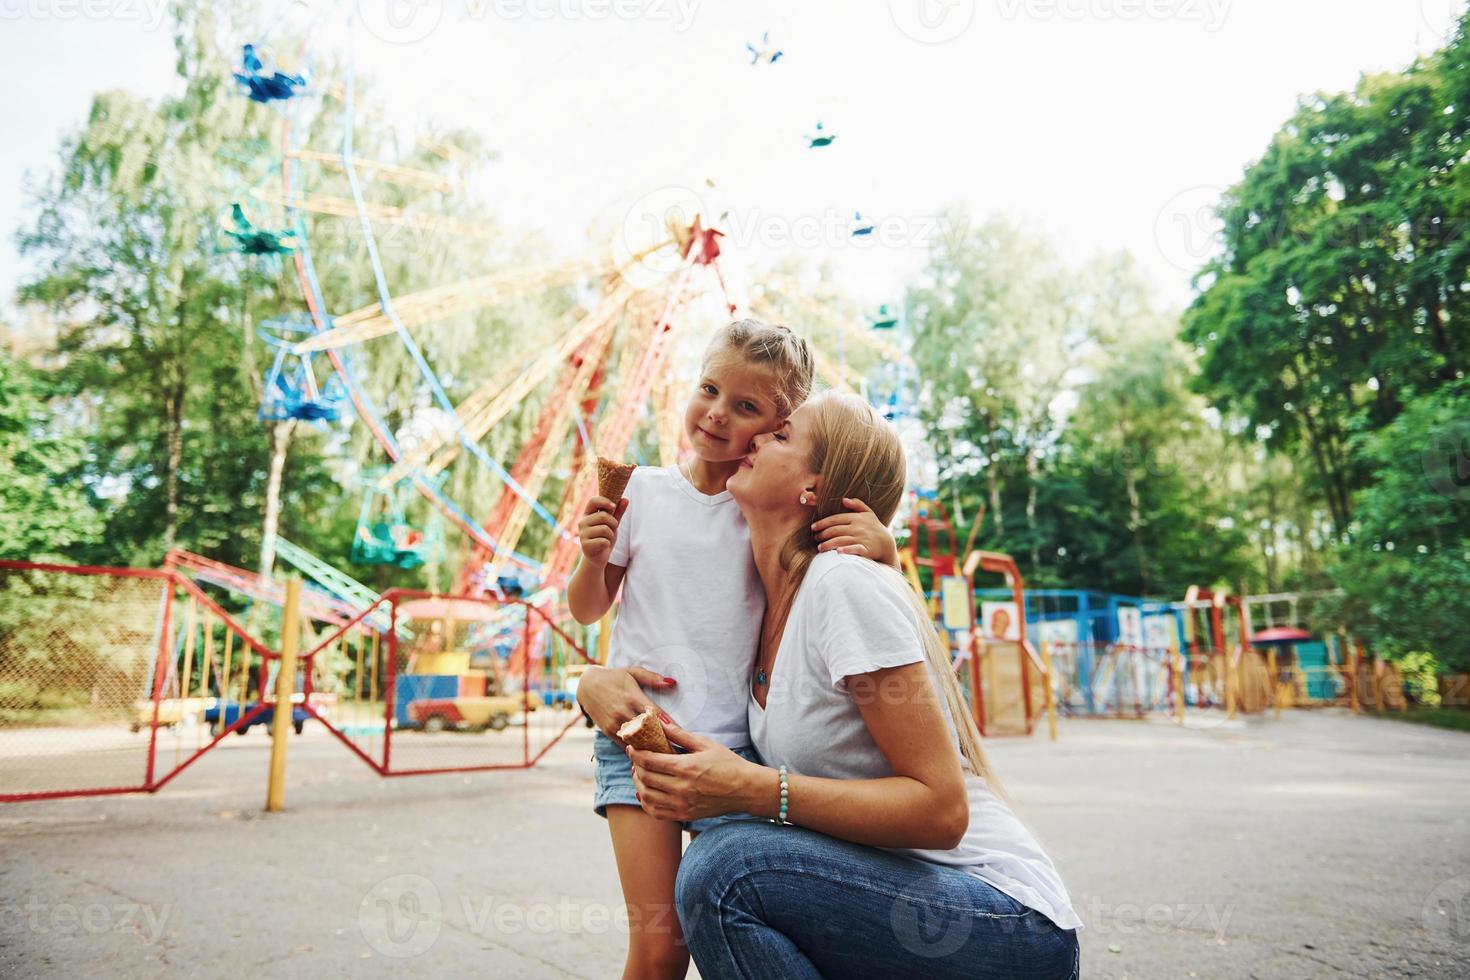 manger de la glace. joyeuse petite fille sa mère passe un bon moment dans le parc ensemble près des attractions photo